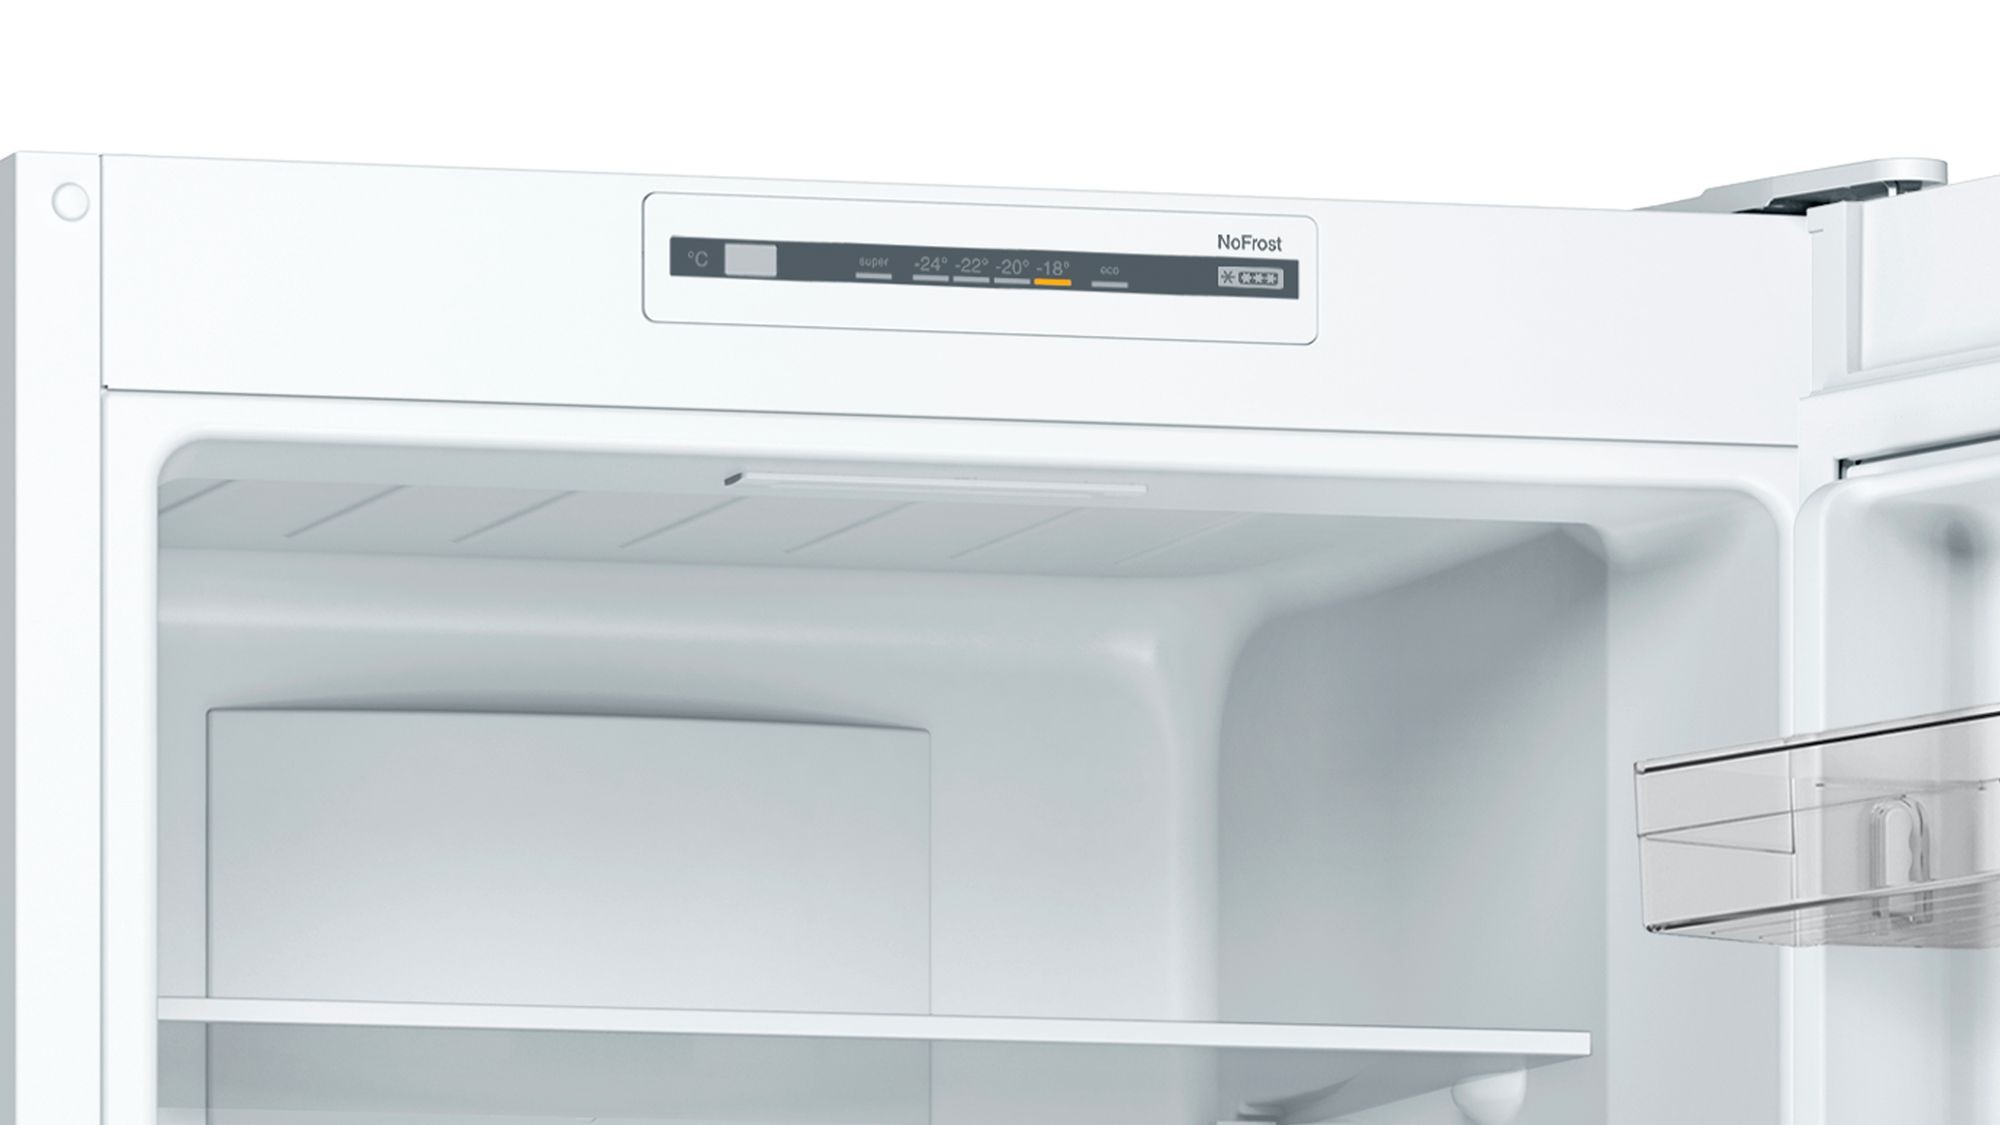 BOSCH Réfrigérateur congélateur bas Série 2 No Frost Multi AirFlow 279L Blanc